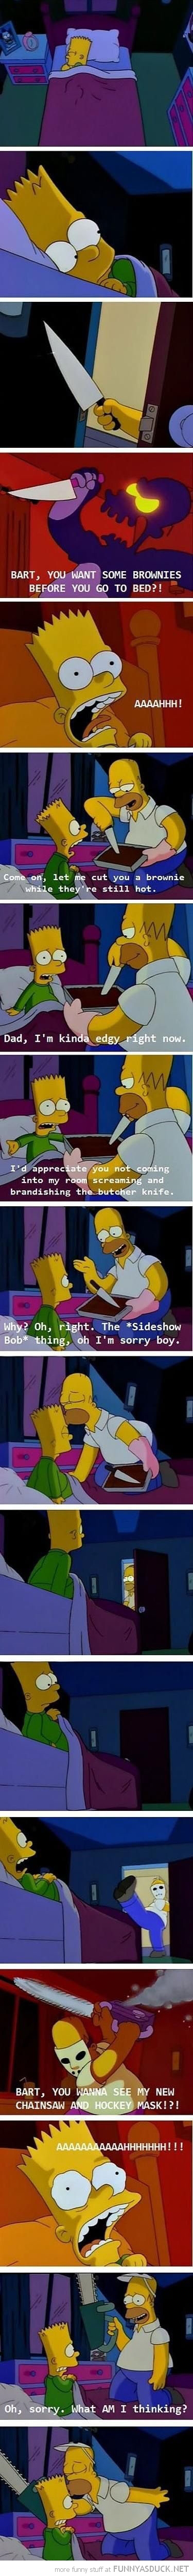 The Sideshow Bob Thing